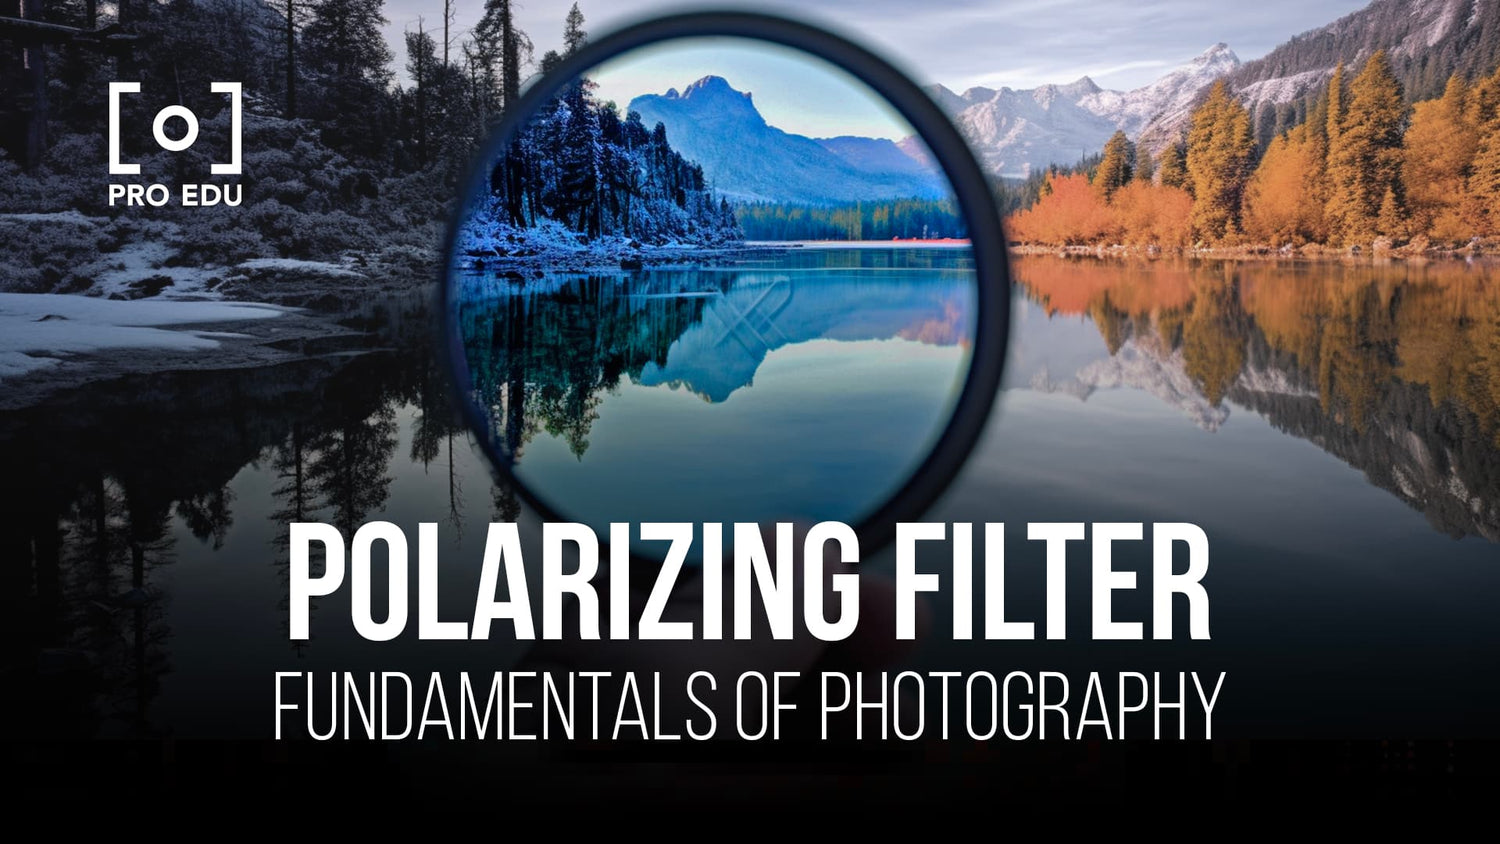 Filtro polarizador: contraste fotográfico mejorado